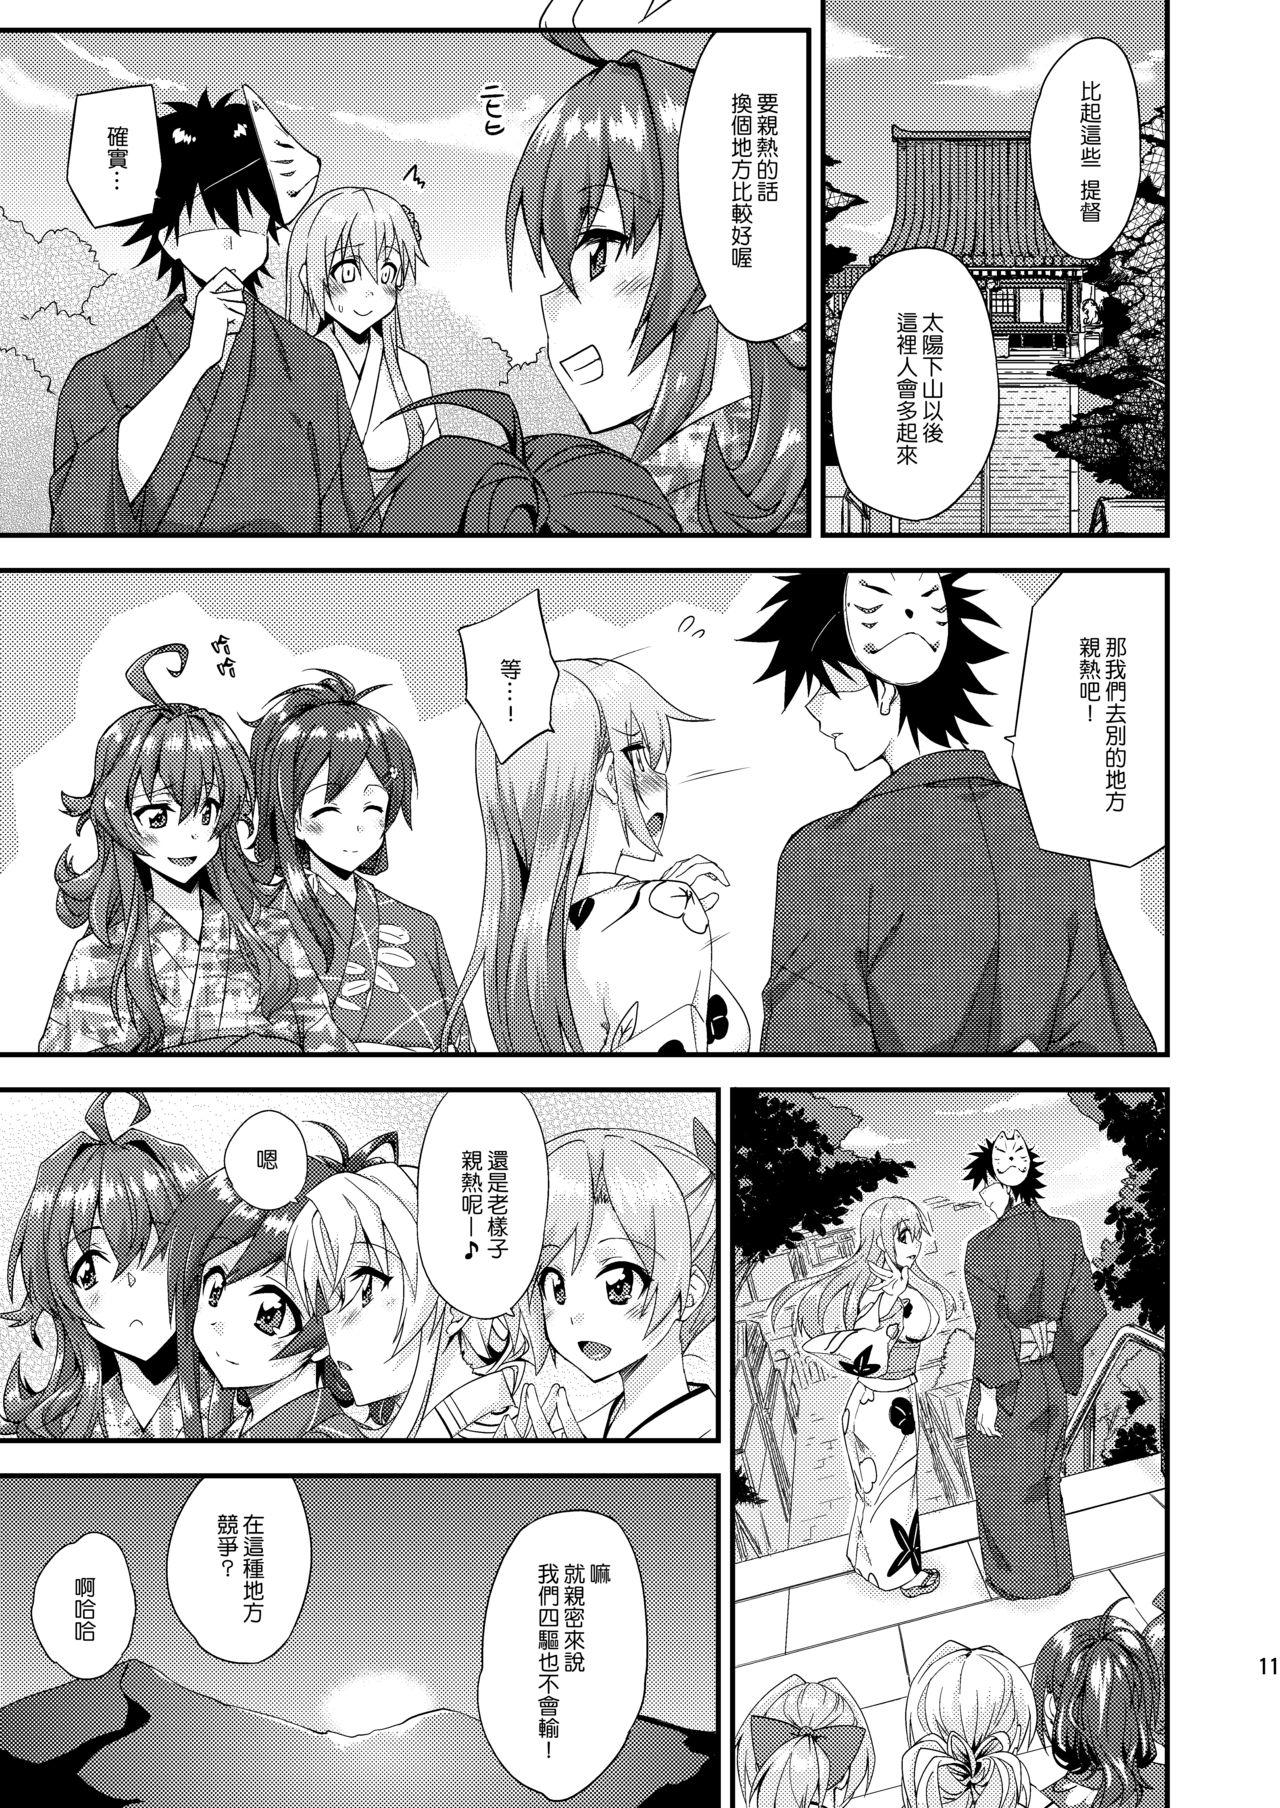 Sweet Suzuya to Dousuru? Nani Shichau? 13 - Kantai collection Fodendo - Page 11